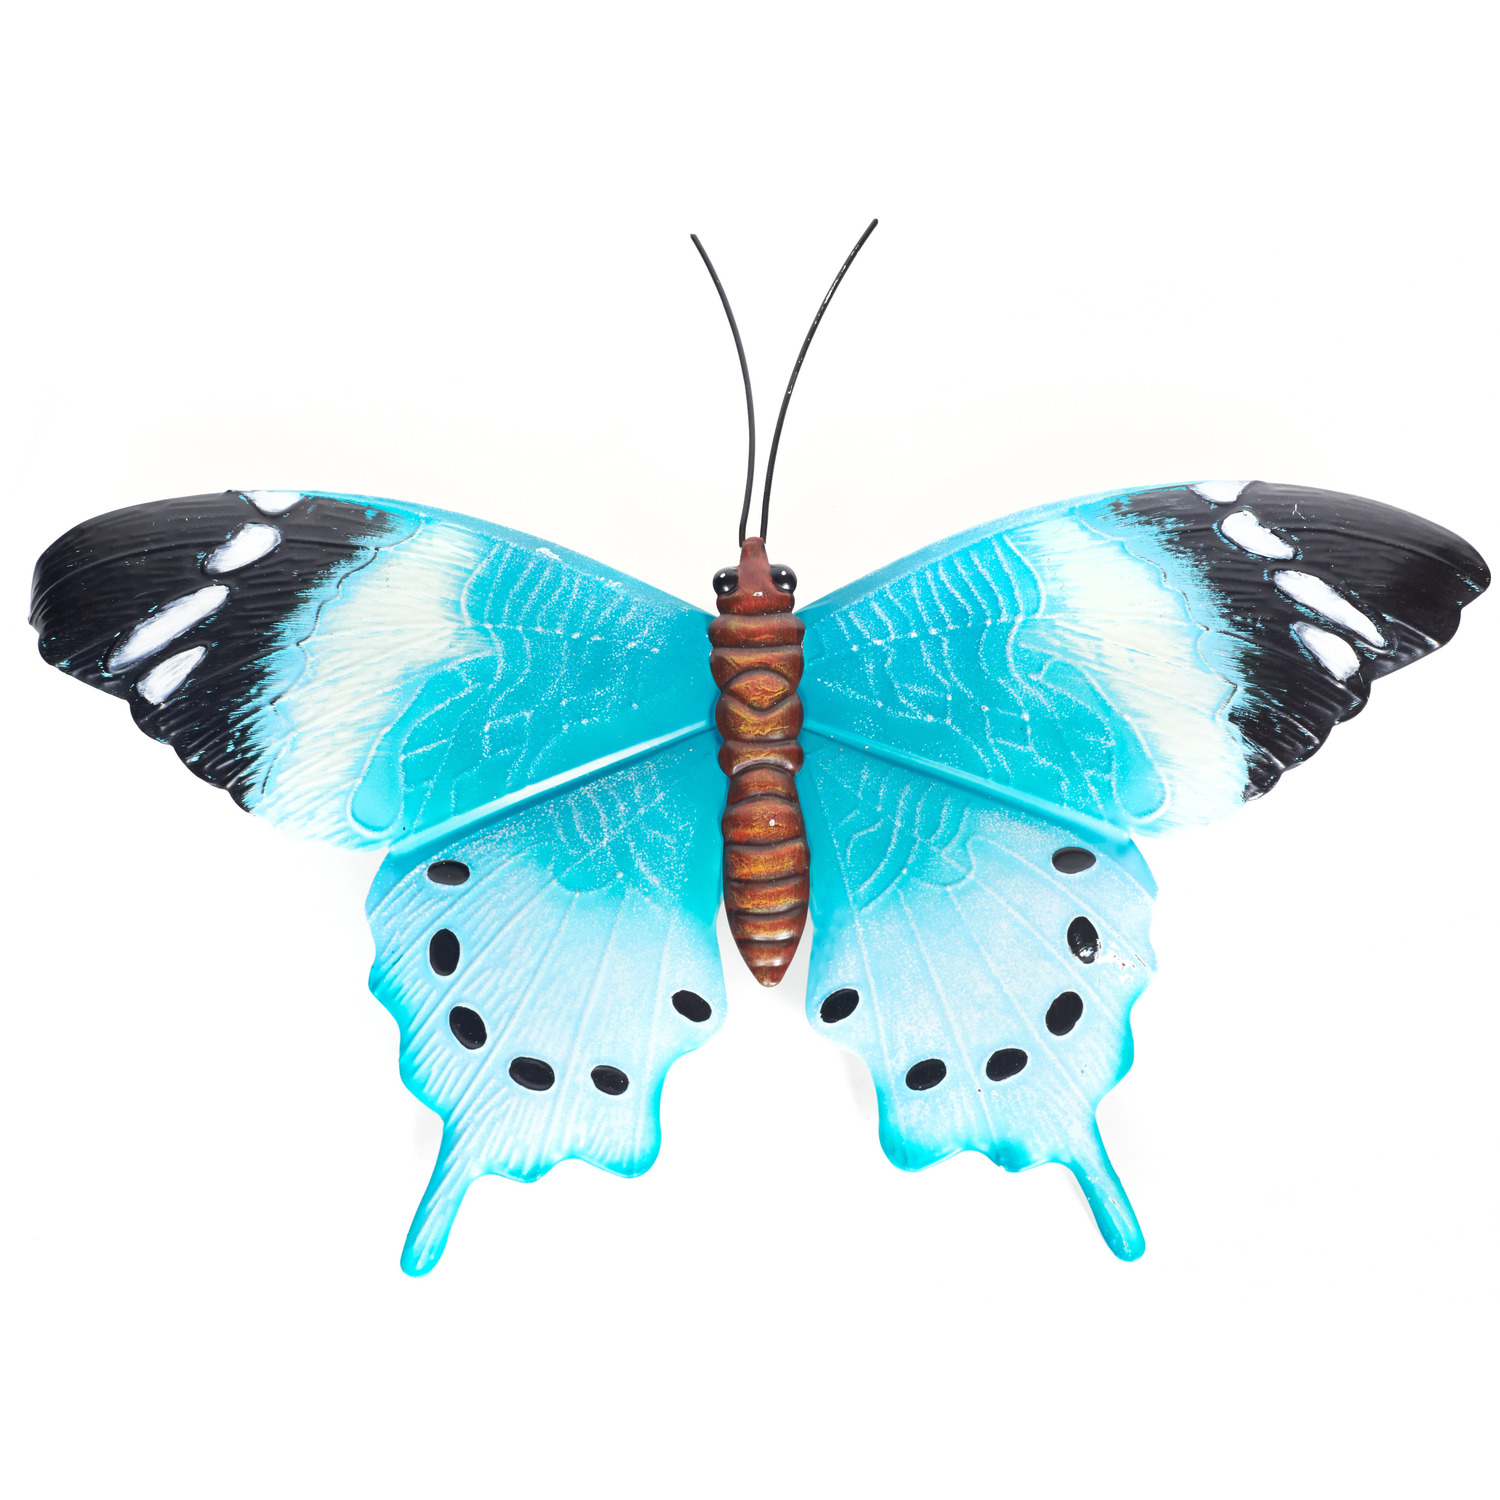 Schutting decoratie vlinders 48 cm blauw-zwart metaal